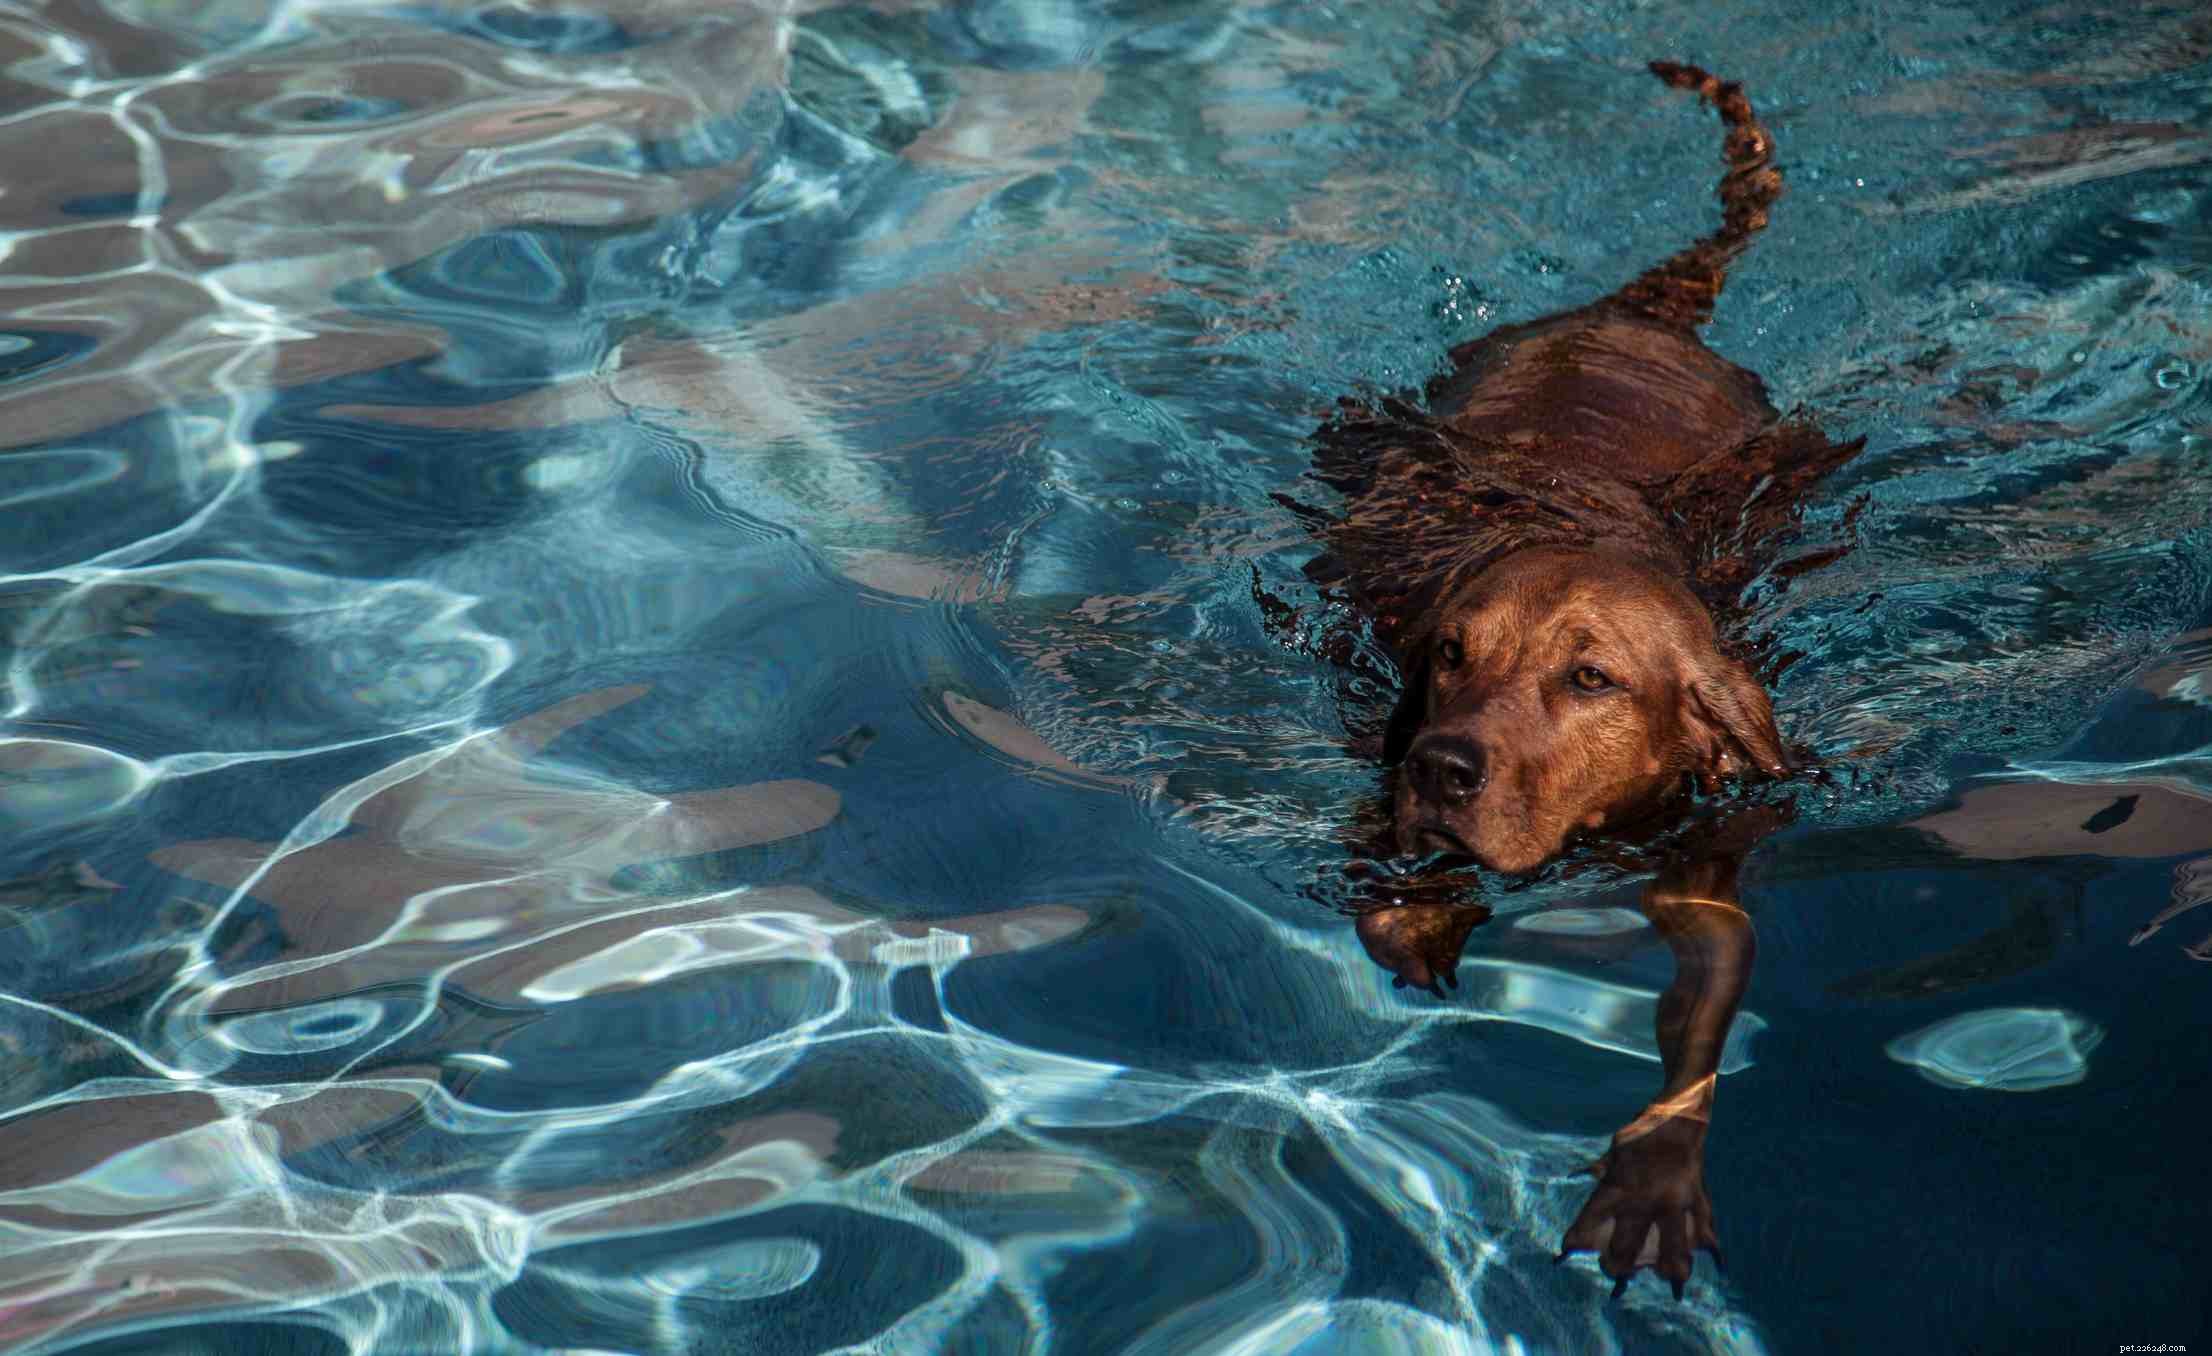 Redbone Coonhound:caratteristiche e cure della razza canina